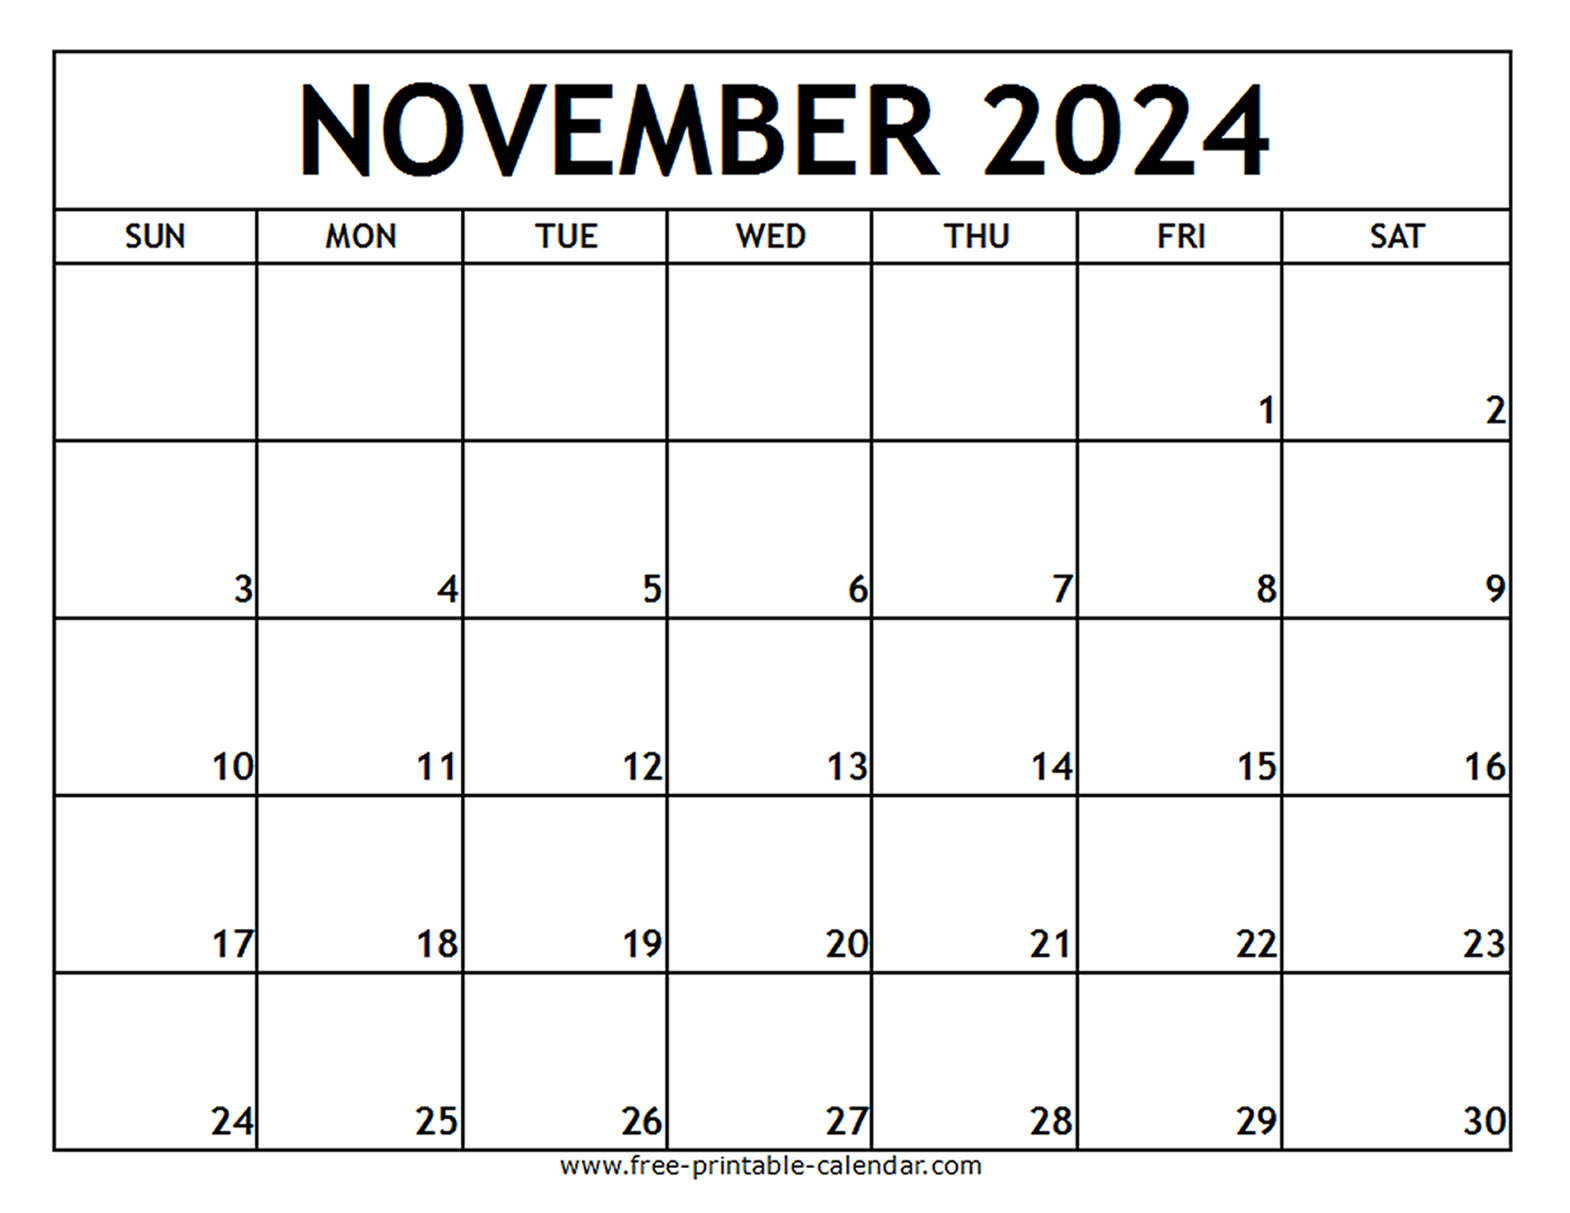 November 2024 Calendar Printable | Calendar 2024 | Printable Calendar 2024